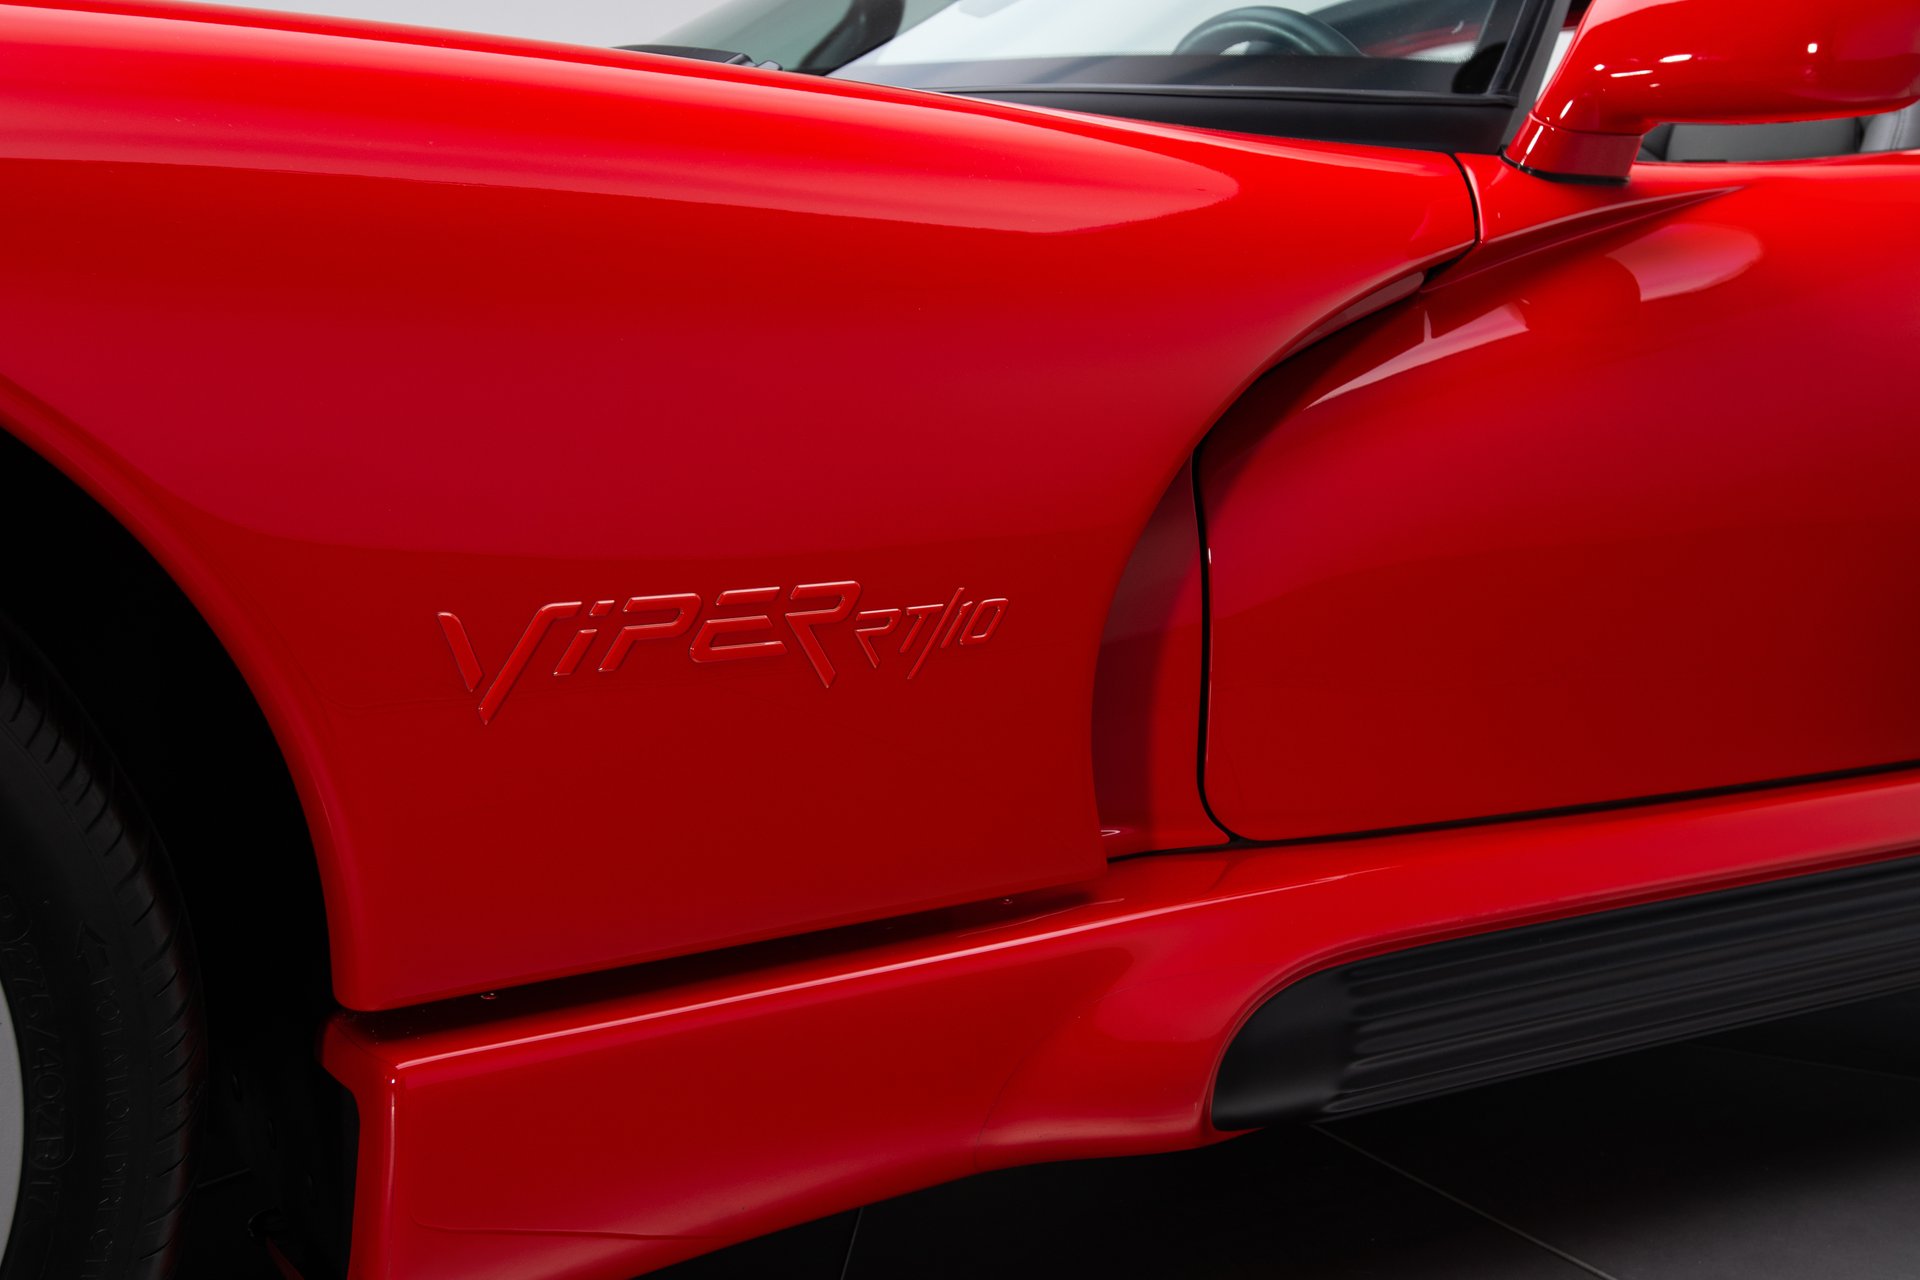 For Sale 1994 Dodge Viper